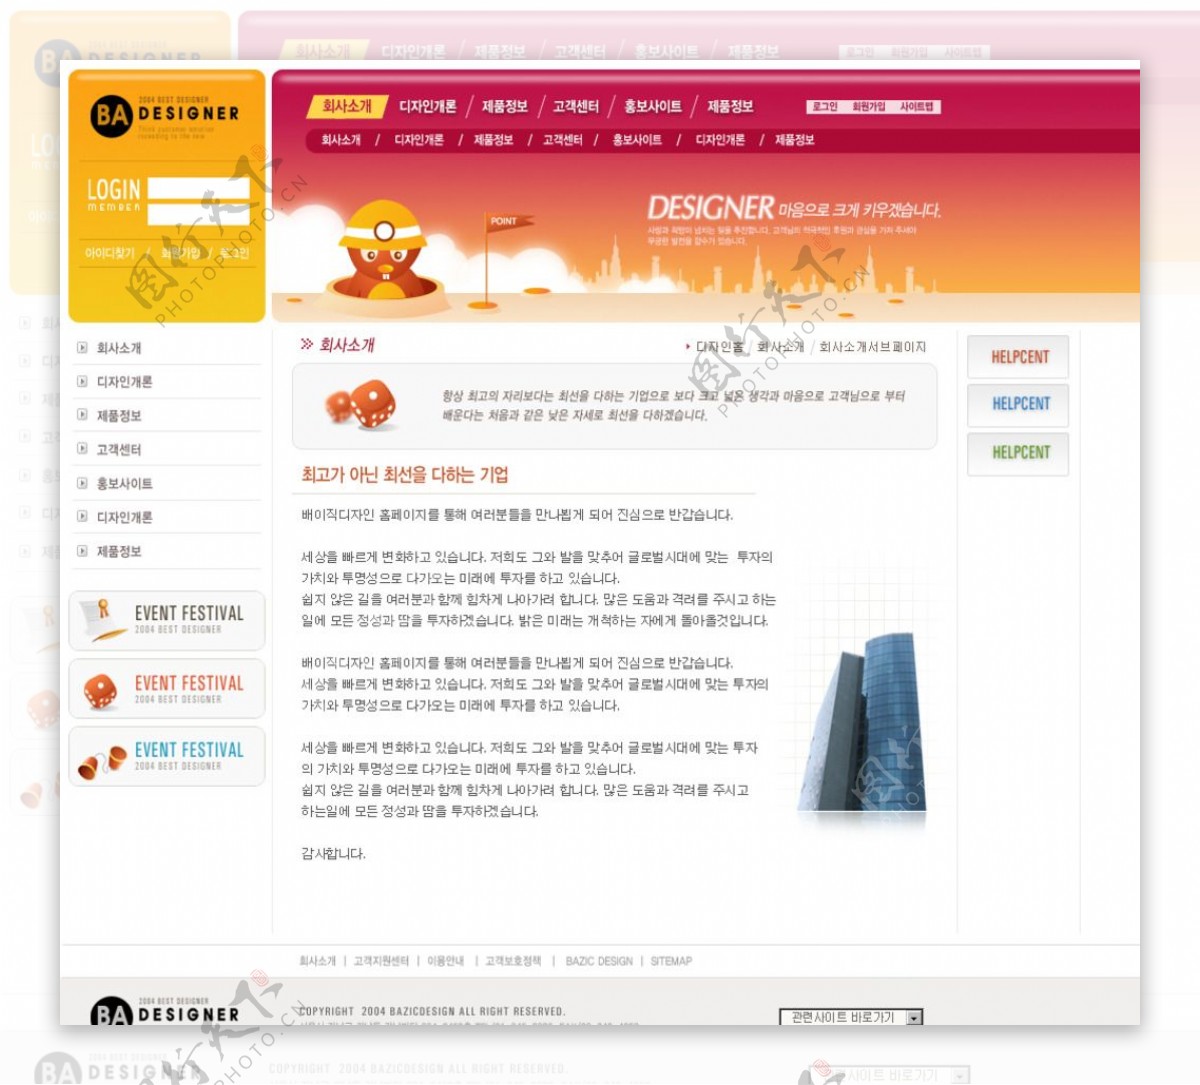 暖色系韩文网站界面